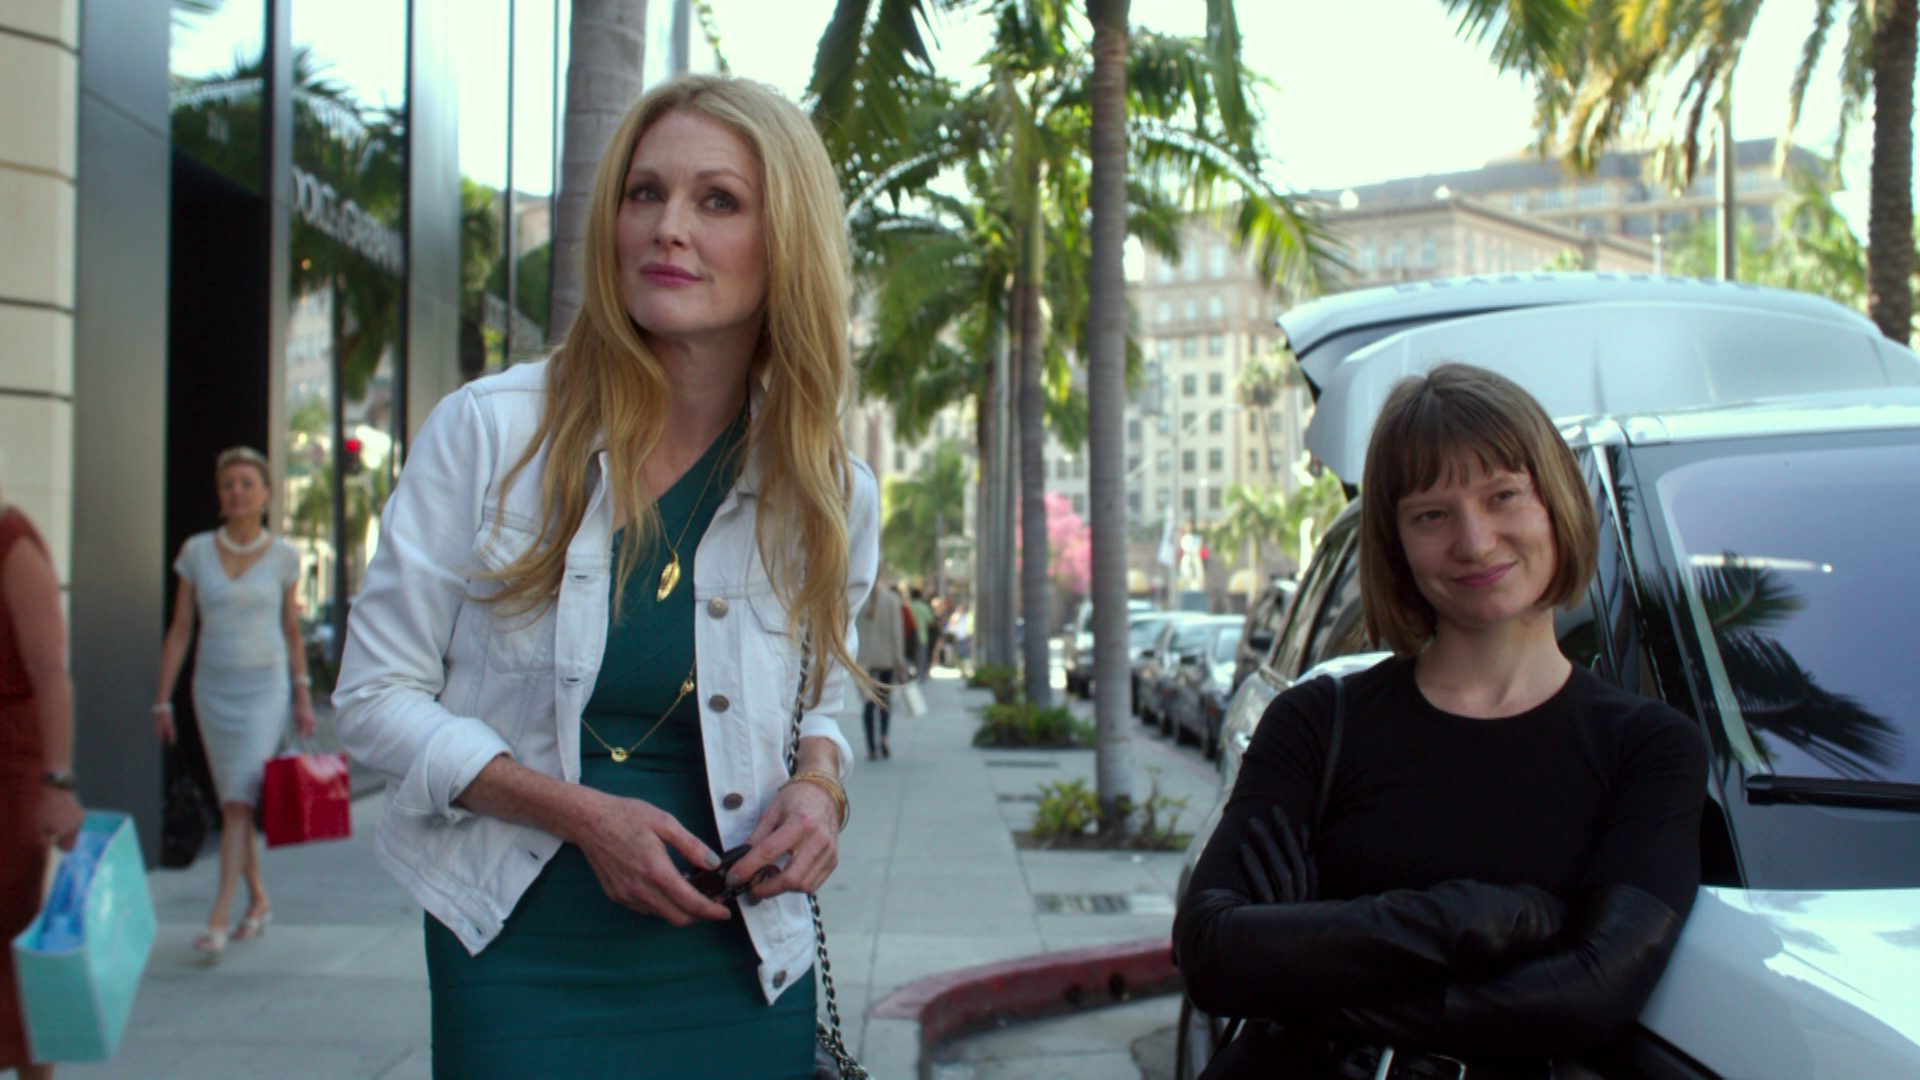 Julianne Moore in allürenhafter Starpose als Havana Segrand auf einer kalifornischen Einkaufsmeile in Los Angeles in Begleitung ihrer Assistentin Agatha Weiss, gespielt von Mia Wasikowska.